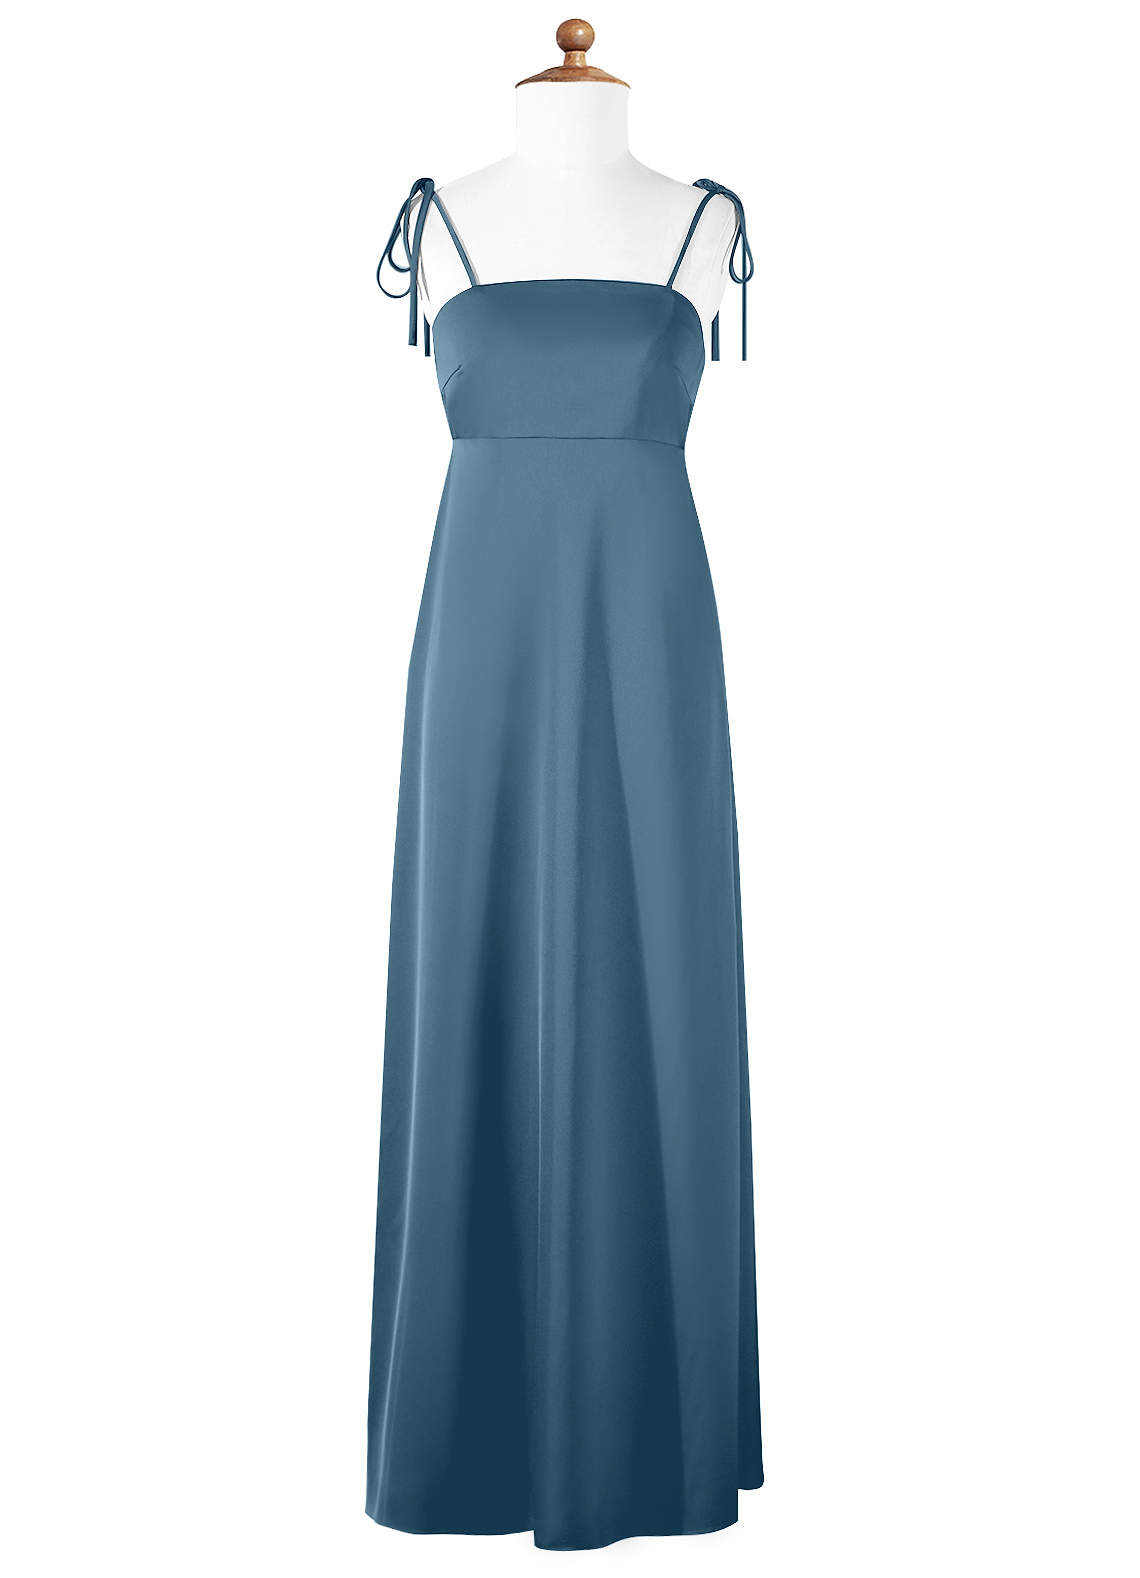 Azazie Violeta A-Line Bow Stretch Satin Floor-Length Junior Bridesmaid Dress image1